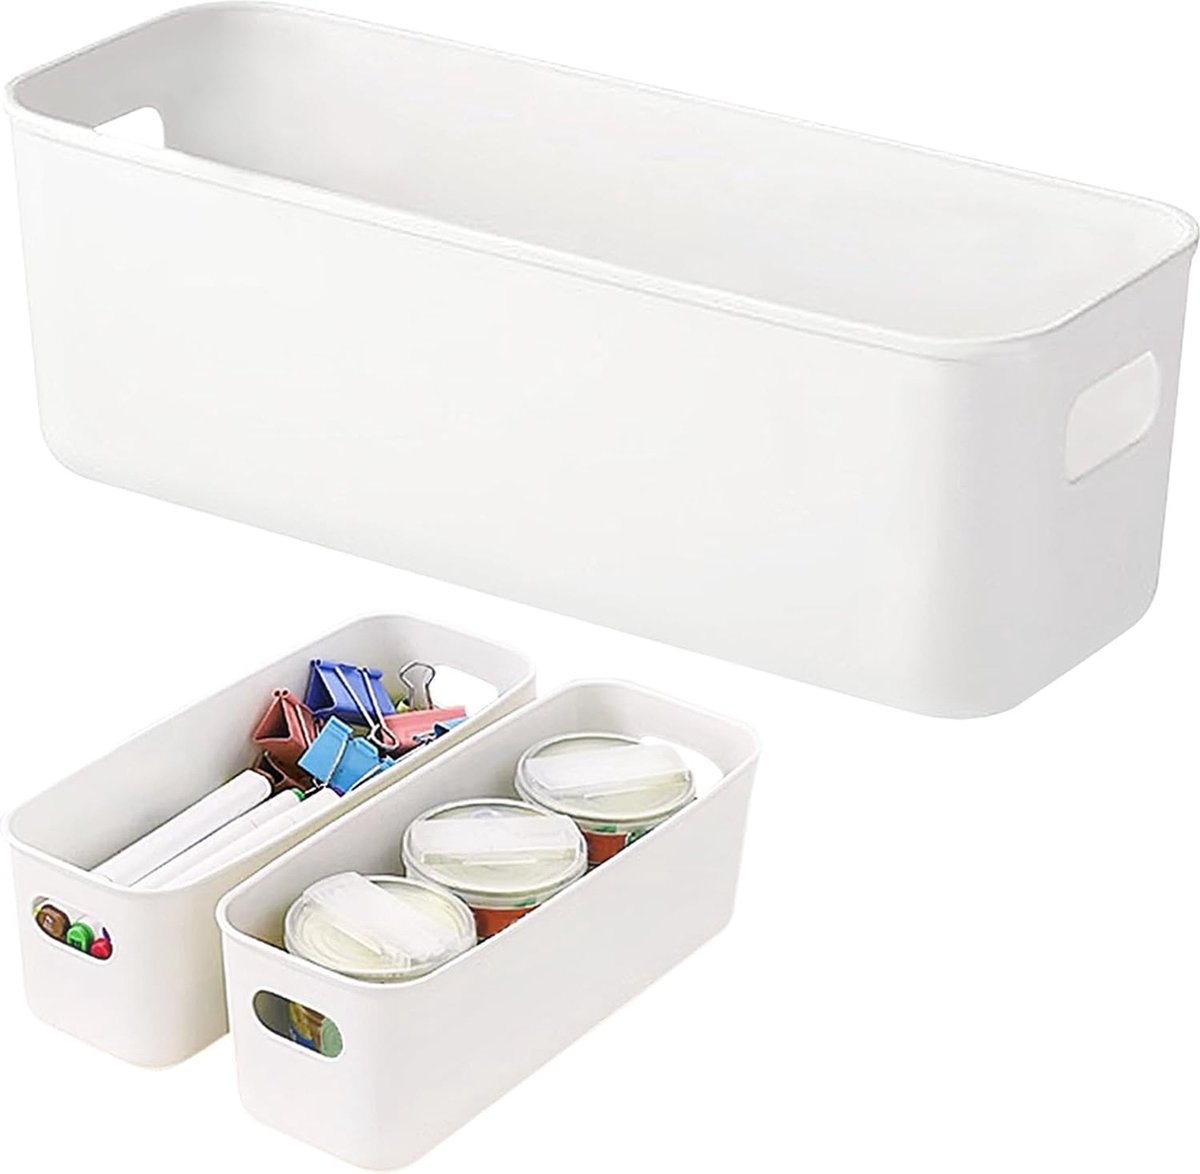 Pakket van 3 opbergdozen, plastic opbergmanden, organizer met handvatten, keukenkast opbergmanden voor lades, keuken, thuis, badkamer, 28 x 9 x 11 cm (wit)